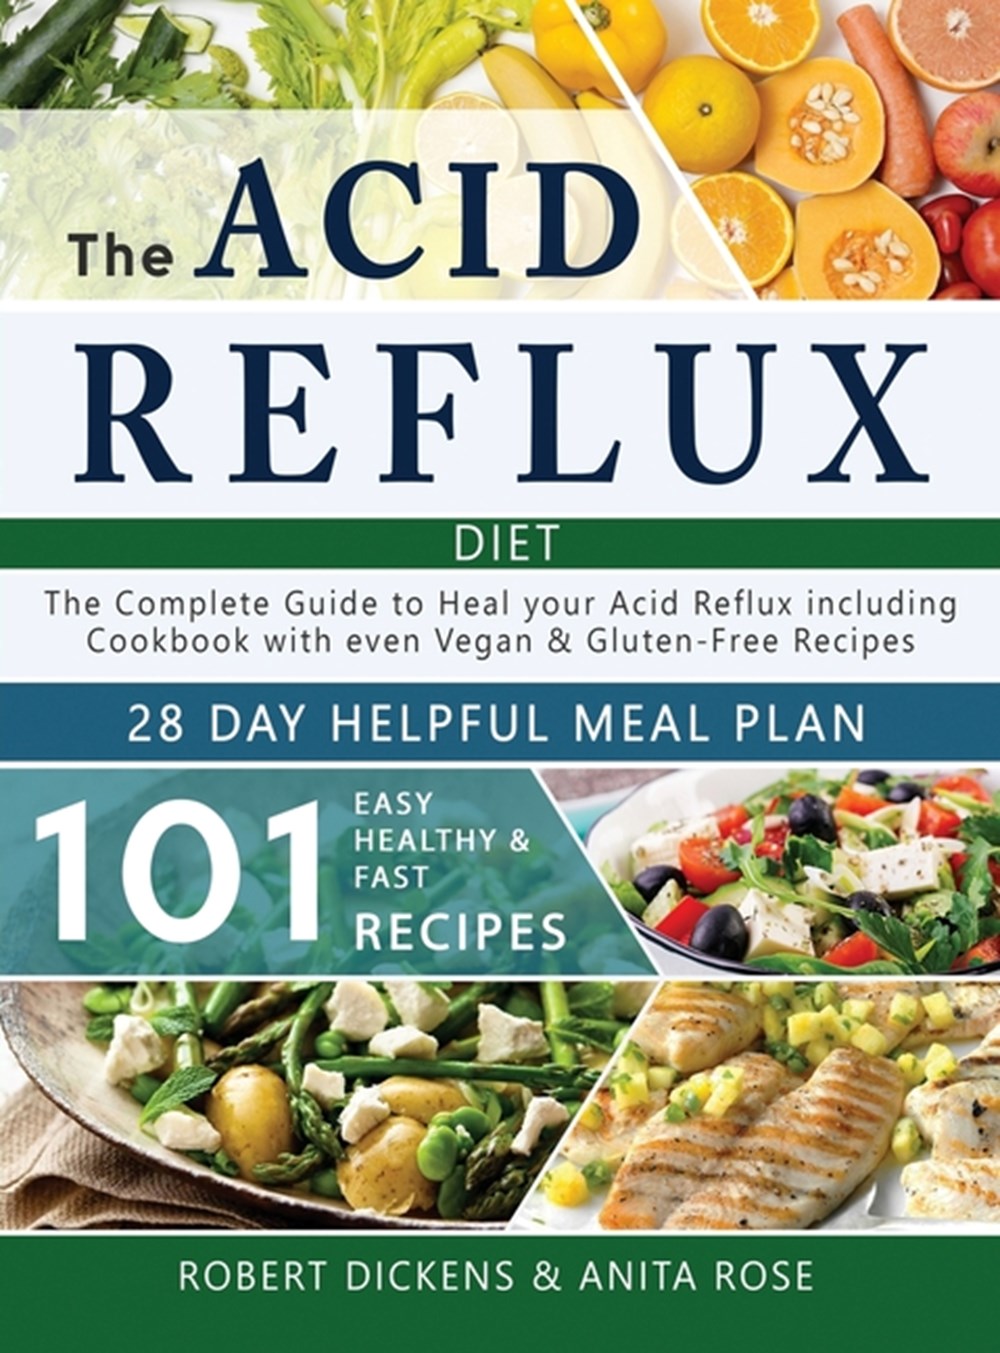 The Acid Reflux Diet